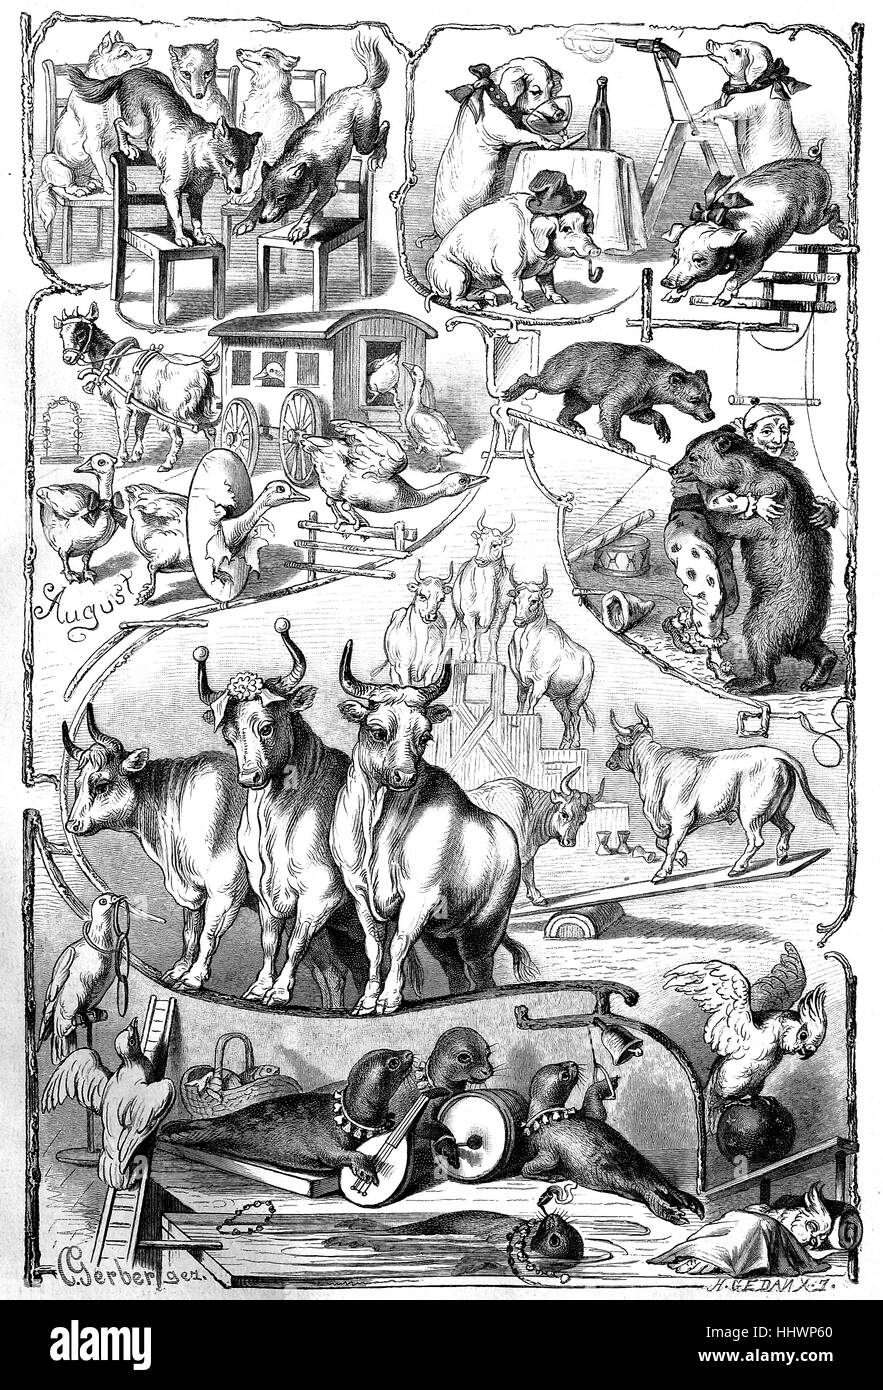 Vestito, animali addestrati, disegno originale da C. Gerber, Germania, immagine storica o illustrazione, pubblicato 1890, digitale migliorata Foto Stock